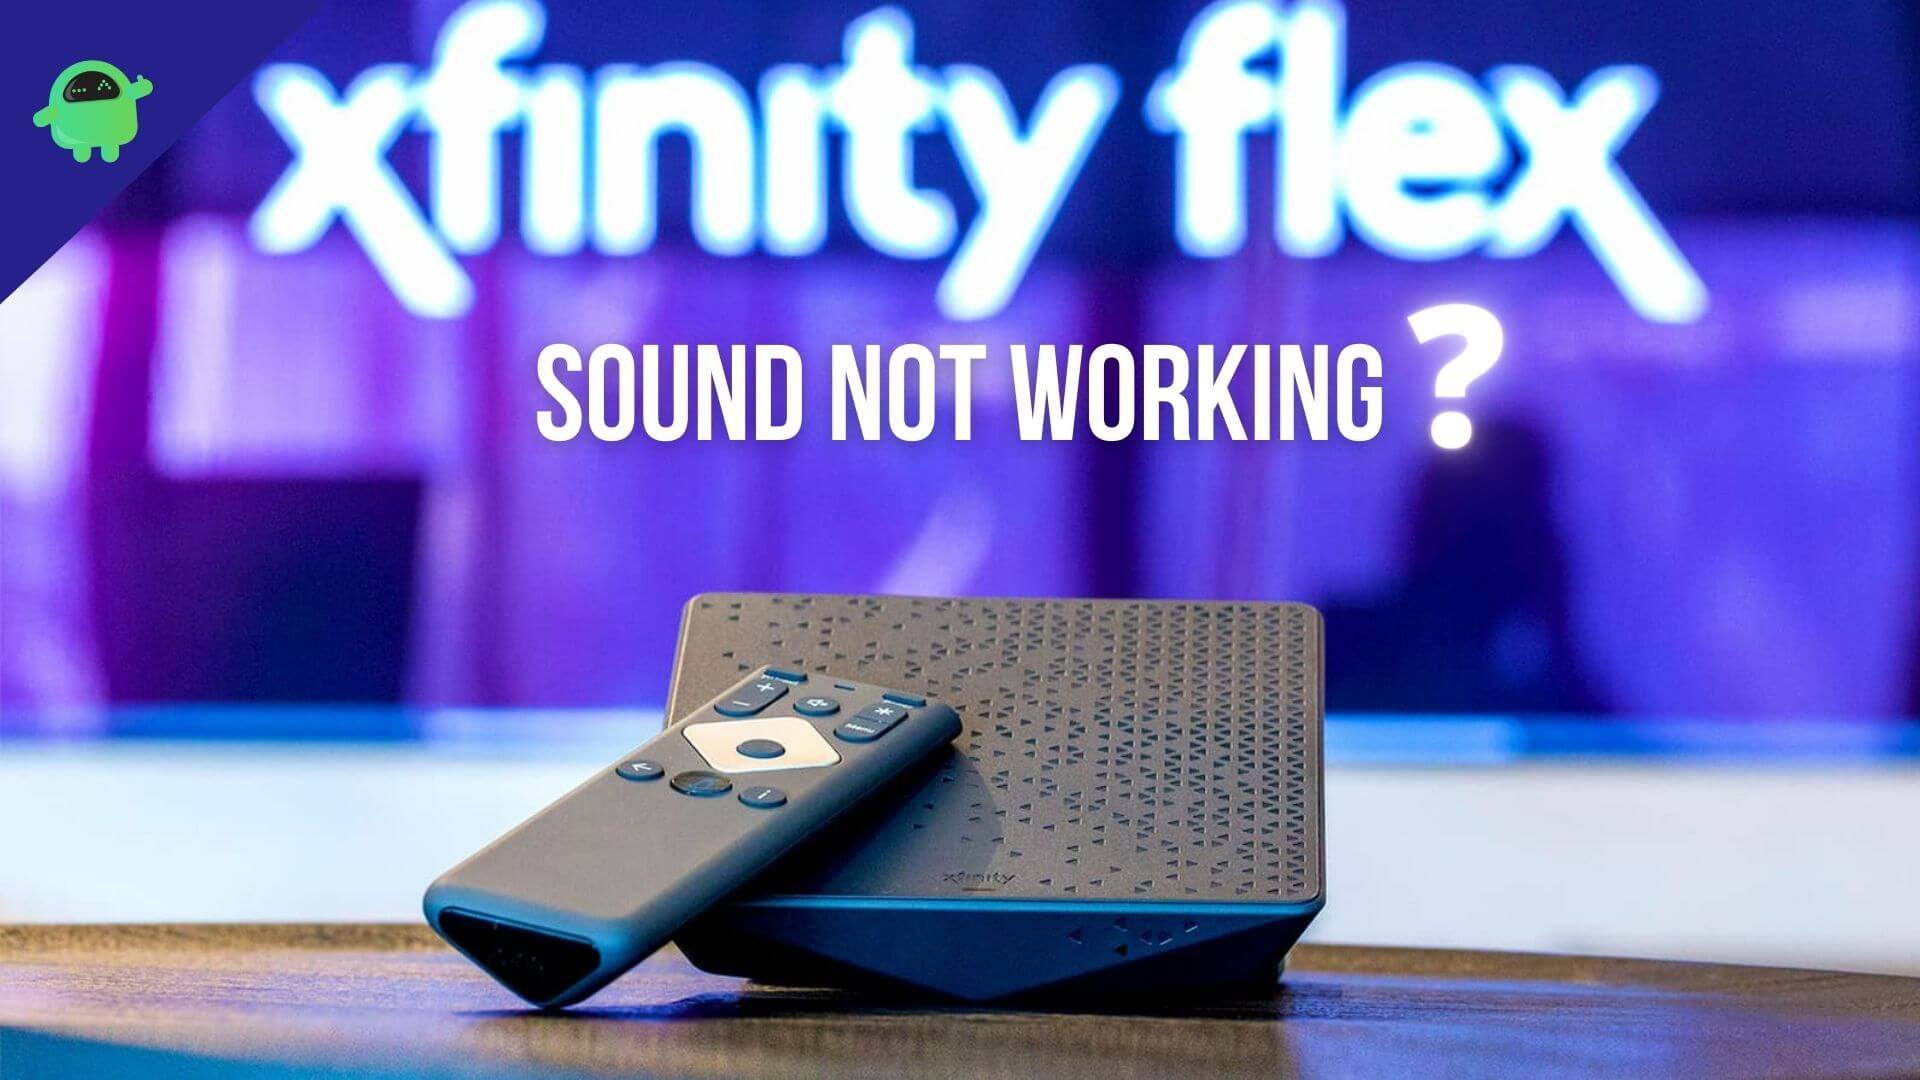 Xfinity Flex Sound Not Working, How To Fix?